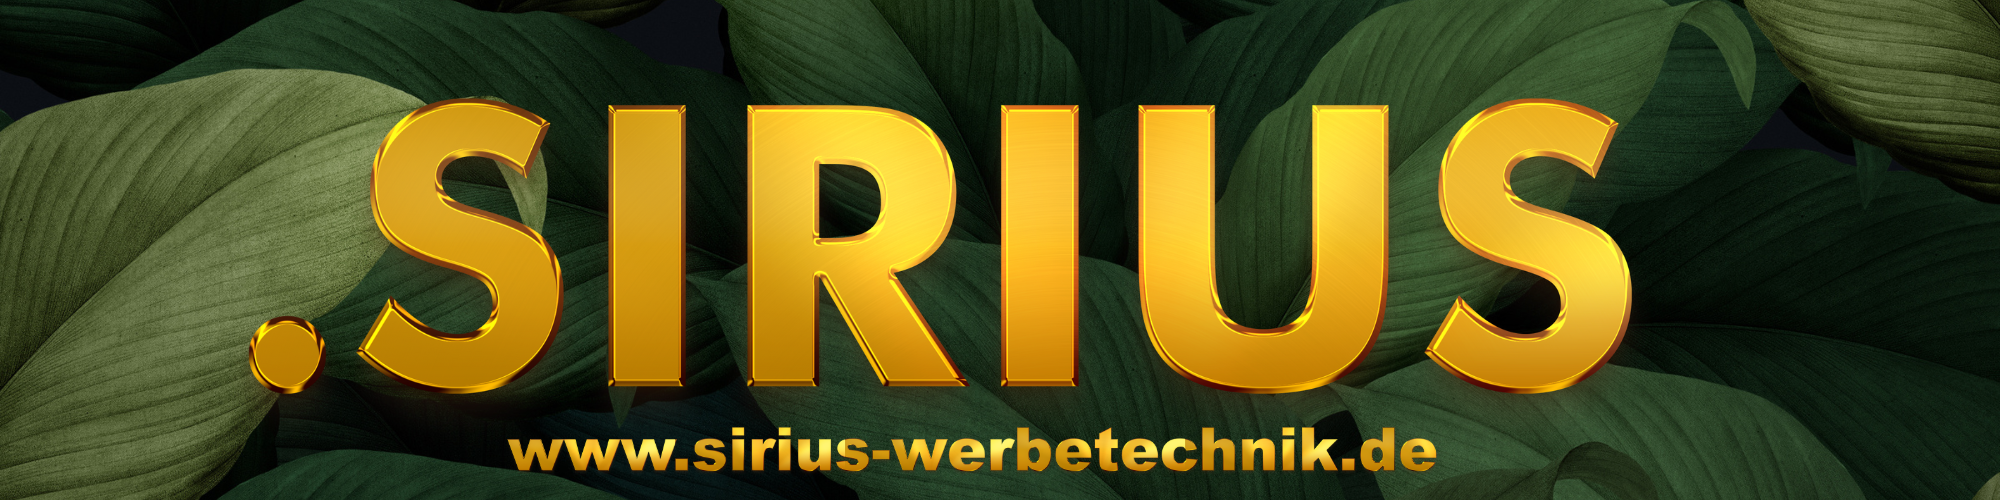 Sirius Werbetechnik GmbH